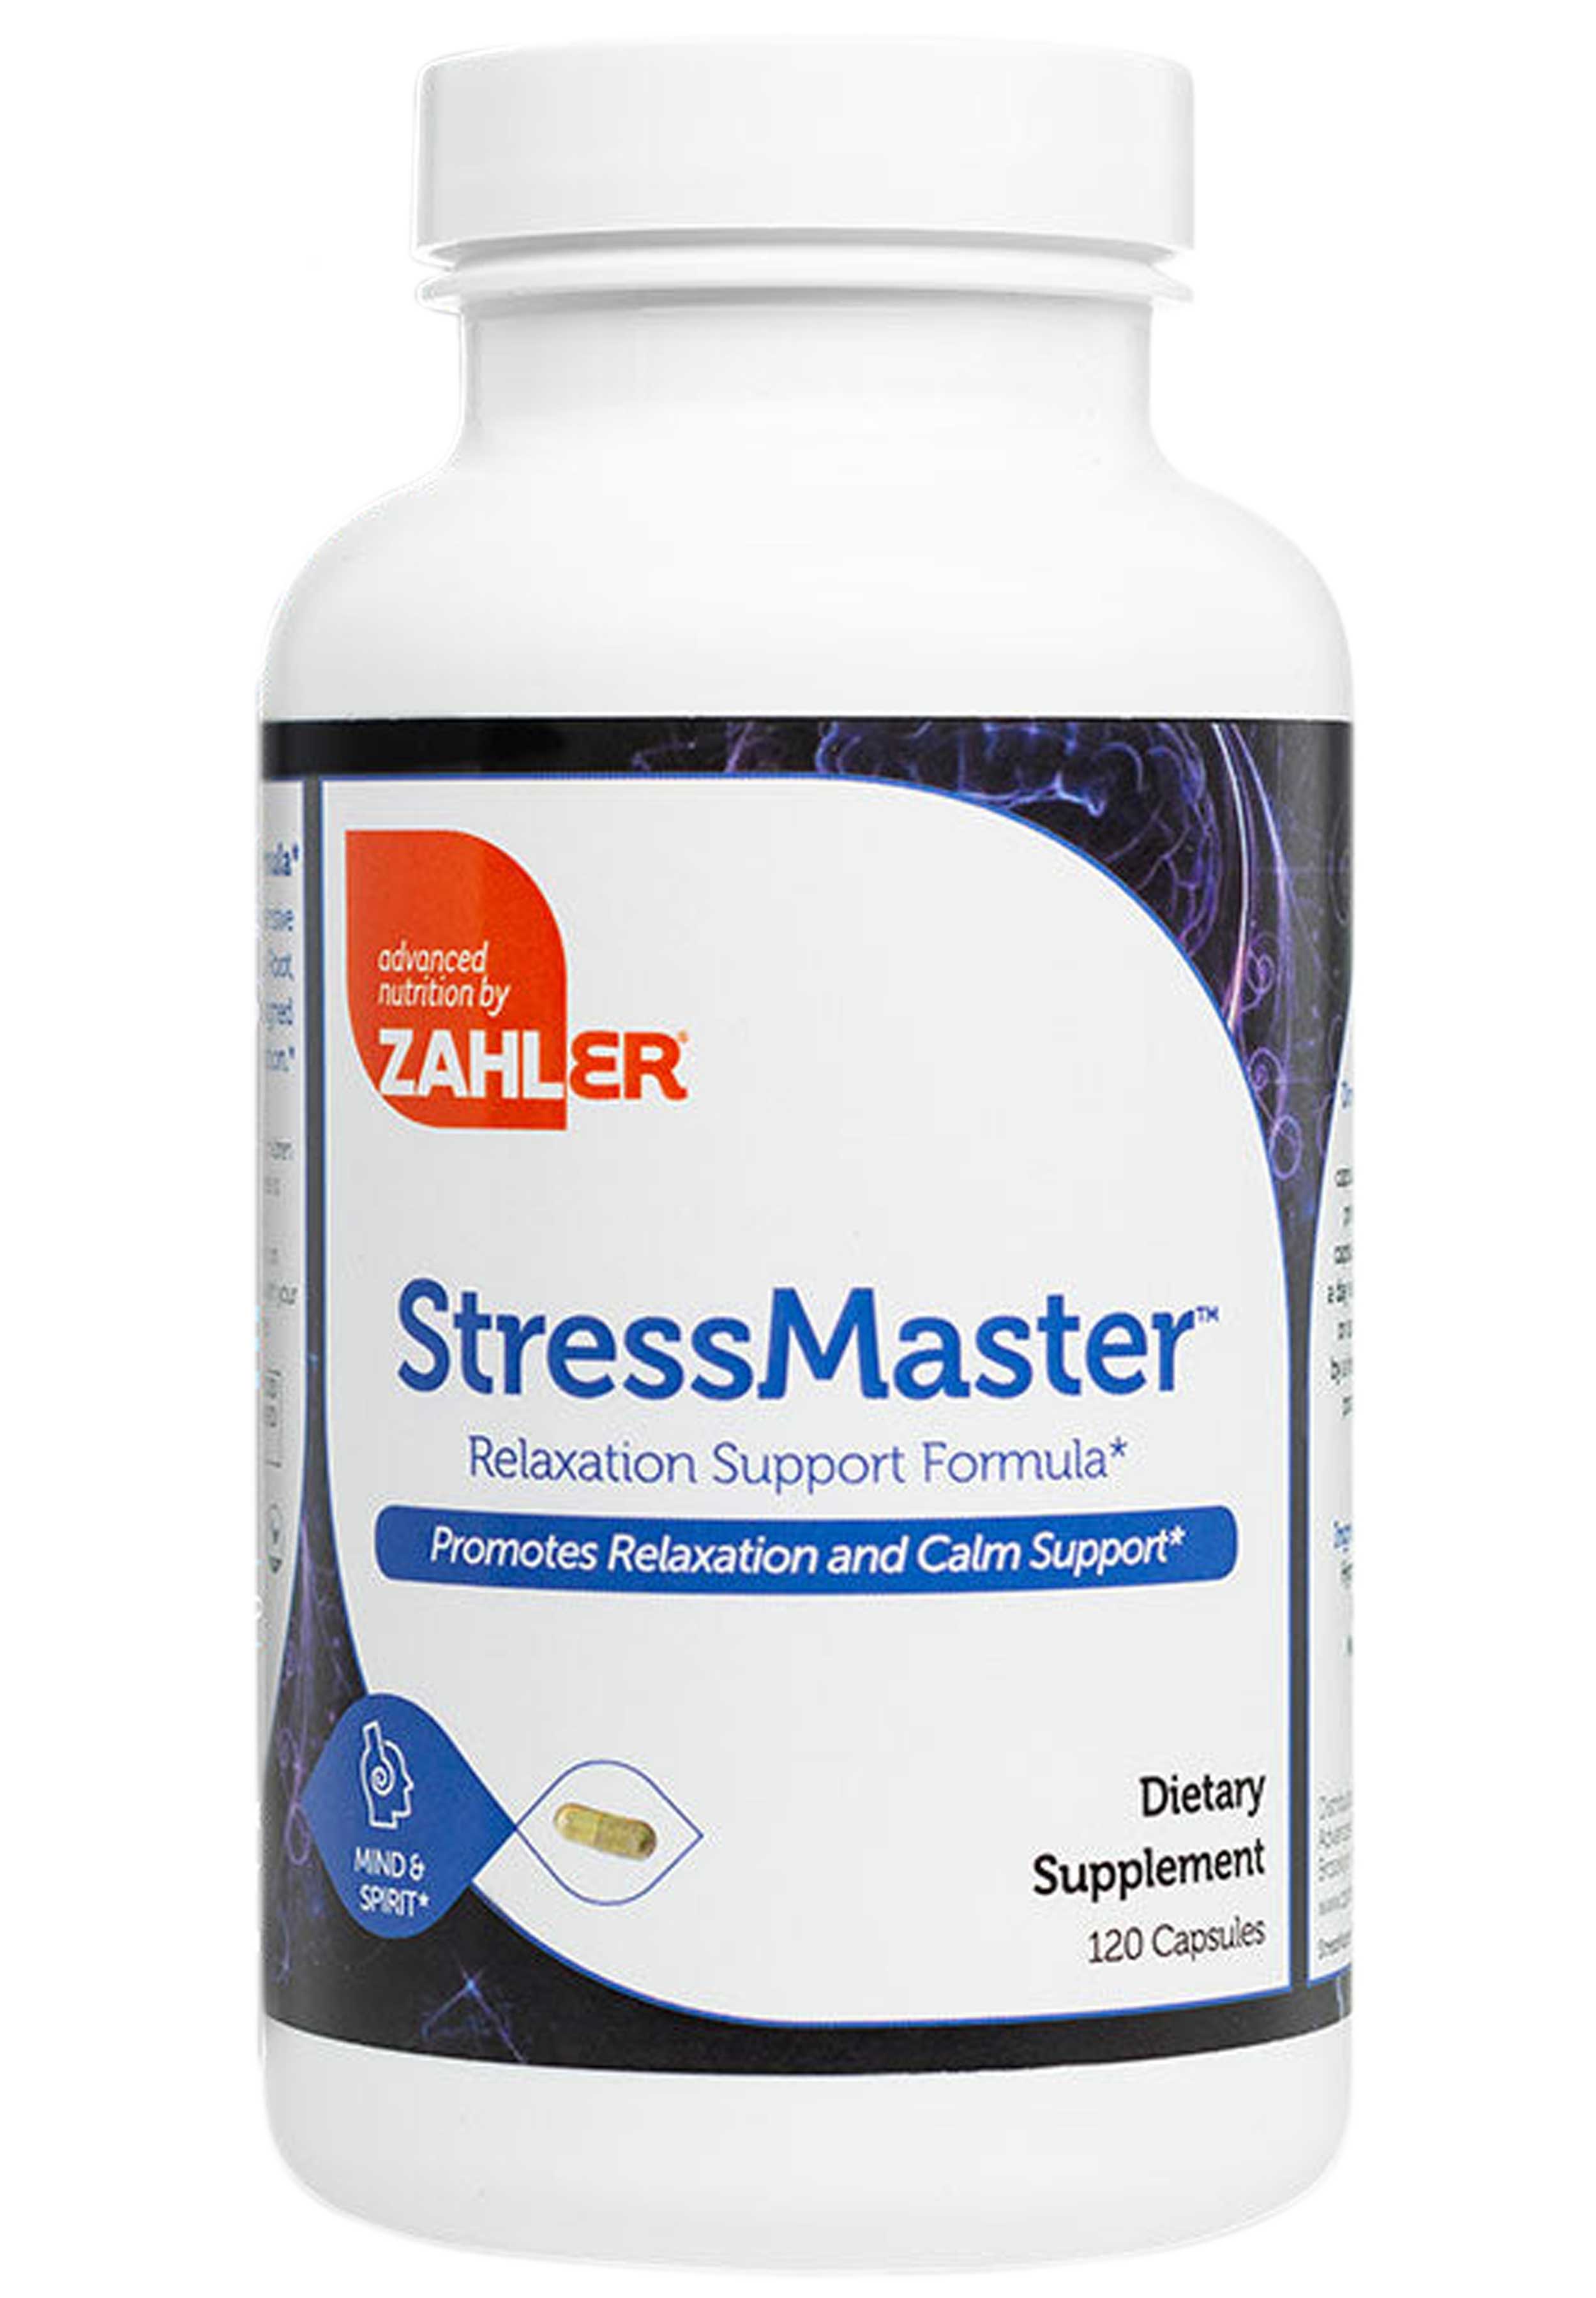 Advanced Nutrition By Zahler Stressmaster